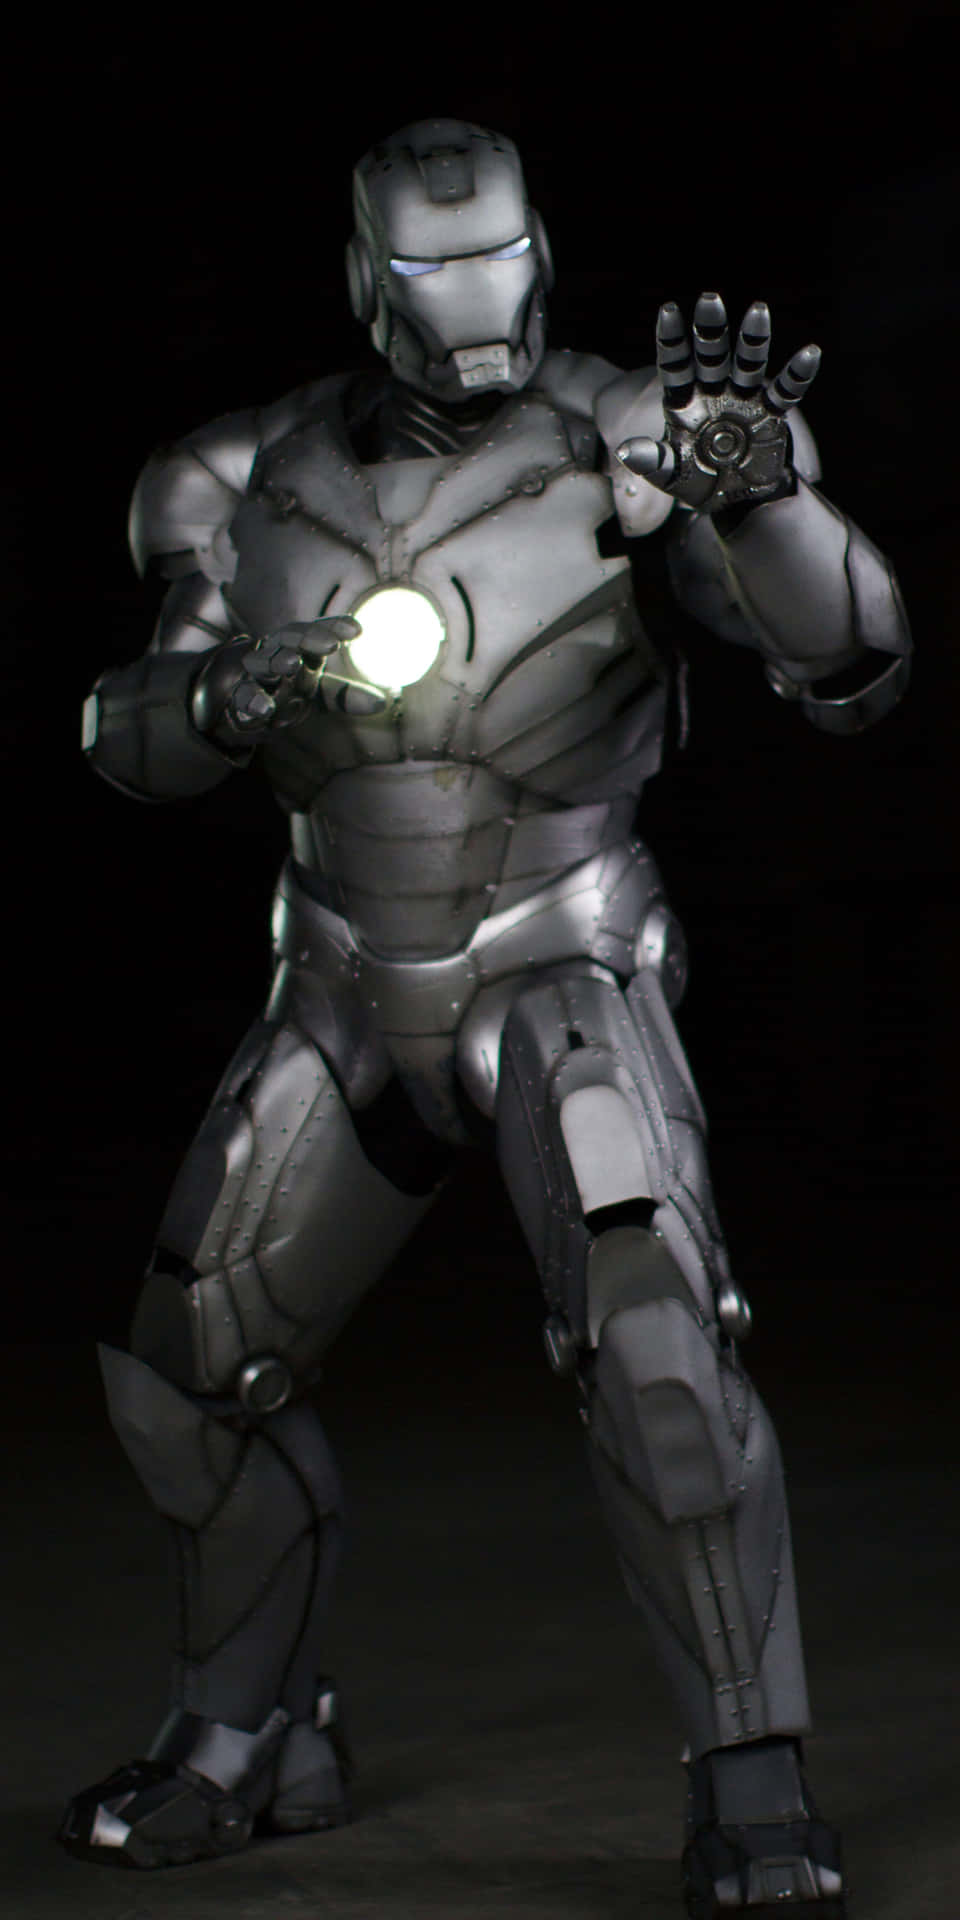 Figurad'azione Di Iron Man, Immagine In Bianco E Nero